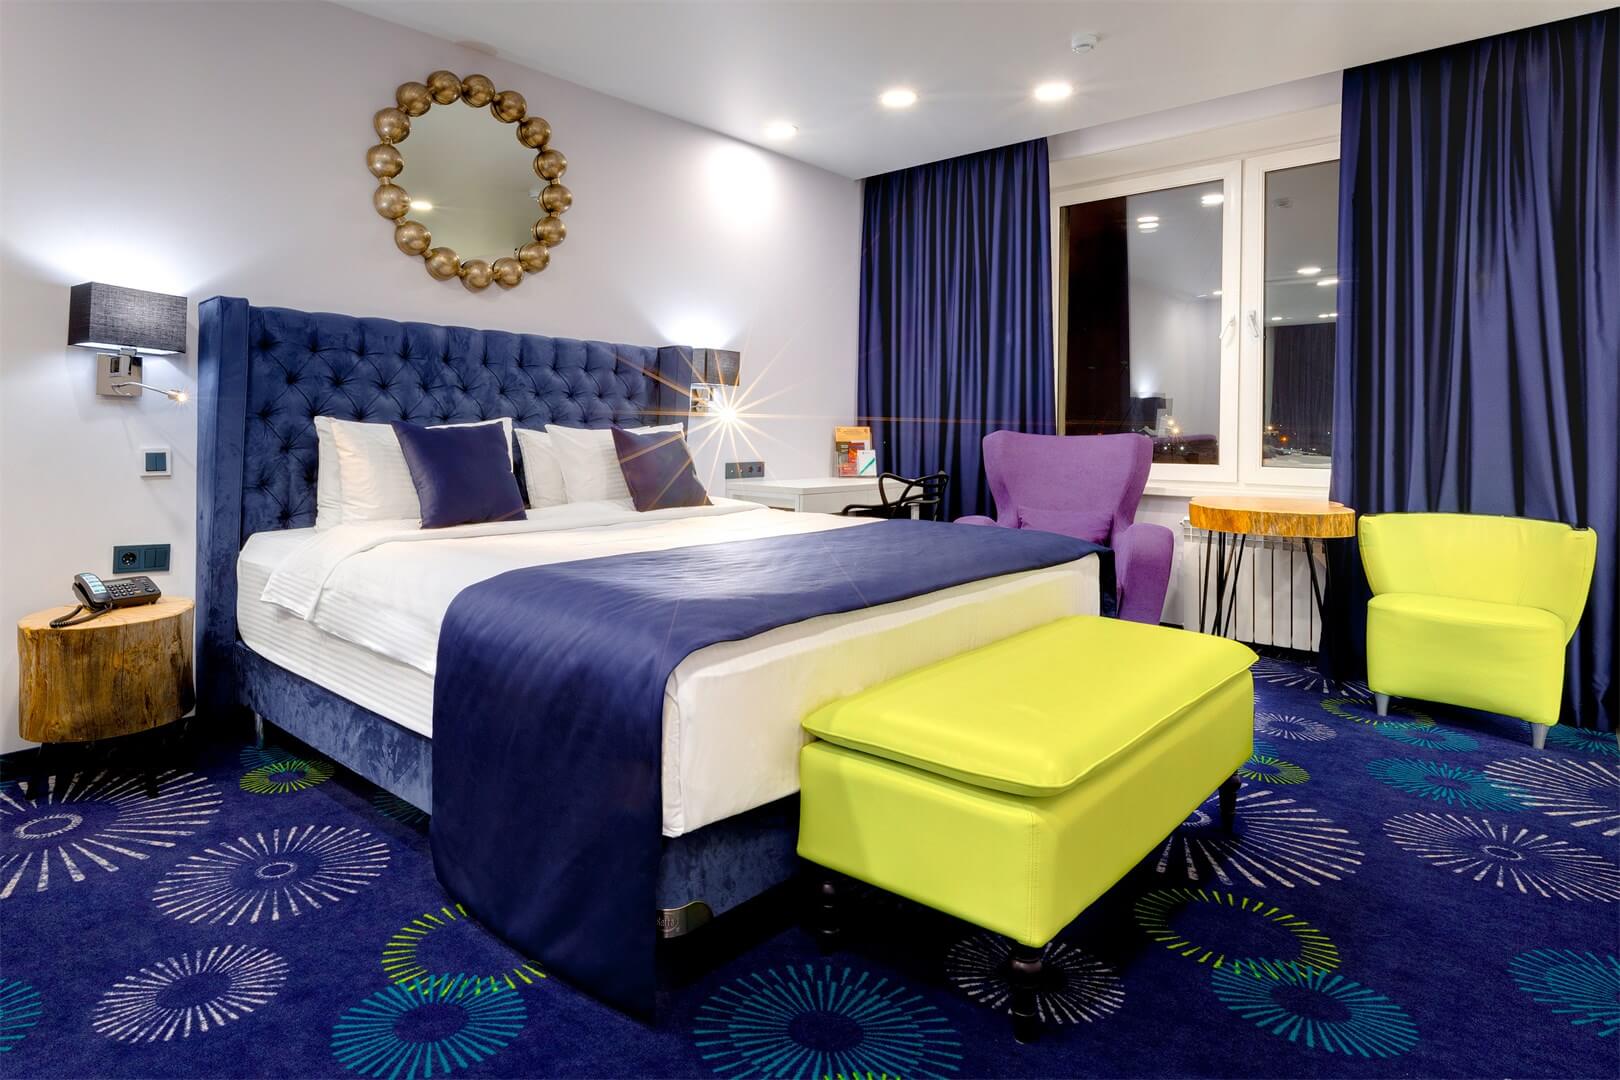 В интерьере применен темно-синий морской цвет: шторы, саше с подушками, ковролин.